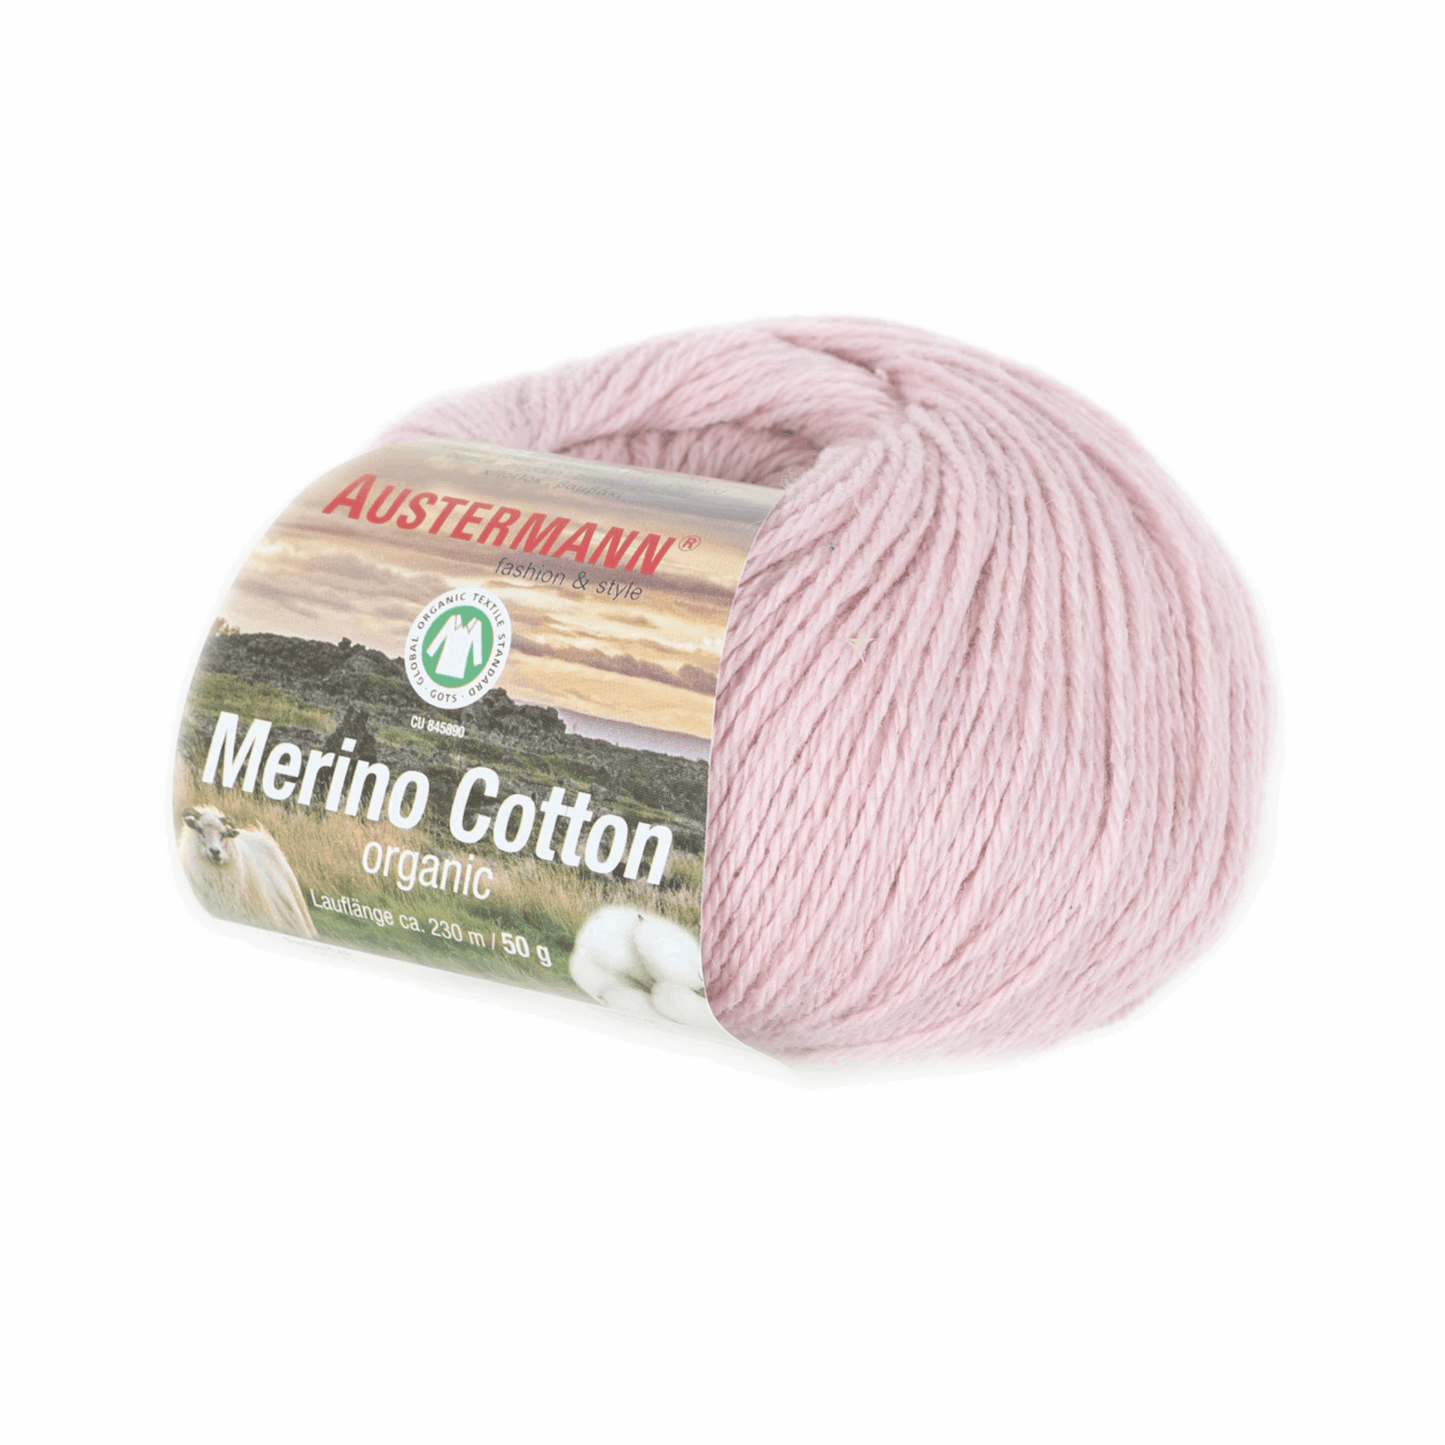 Schoeller-Austermann Gots Merino Cotton, 50g, 98311, Farbe rose 5